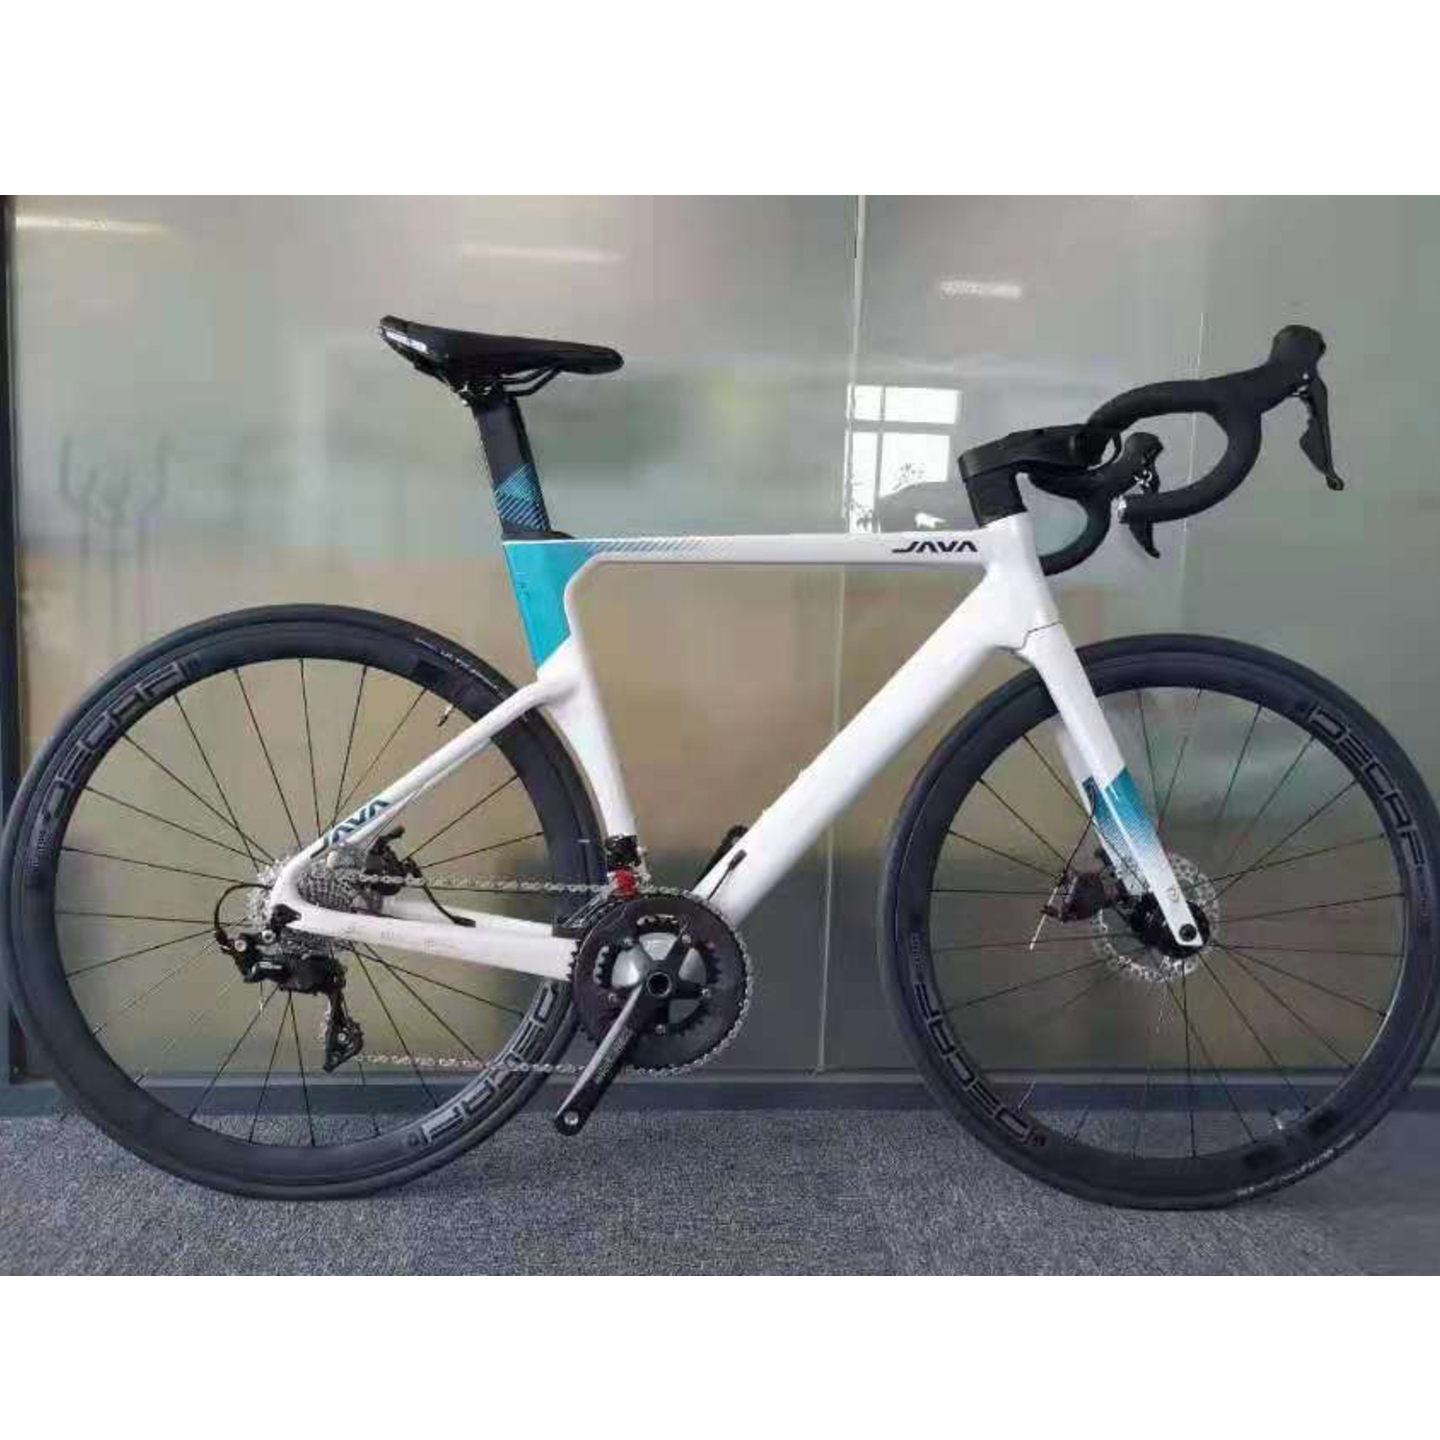 Java FUOCO White Carbon Road Bike Alloy wheelset